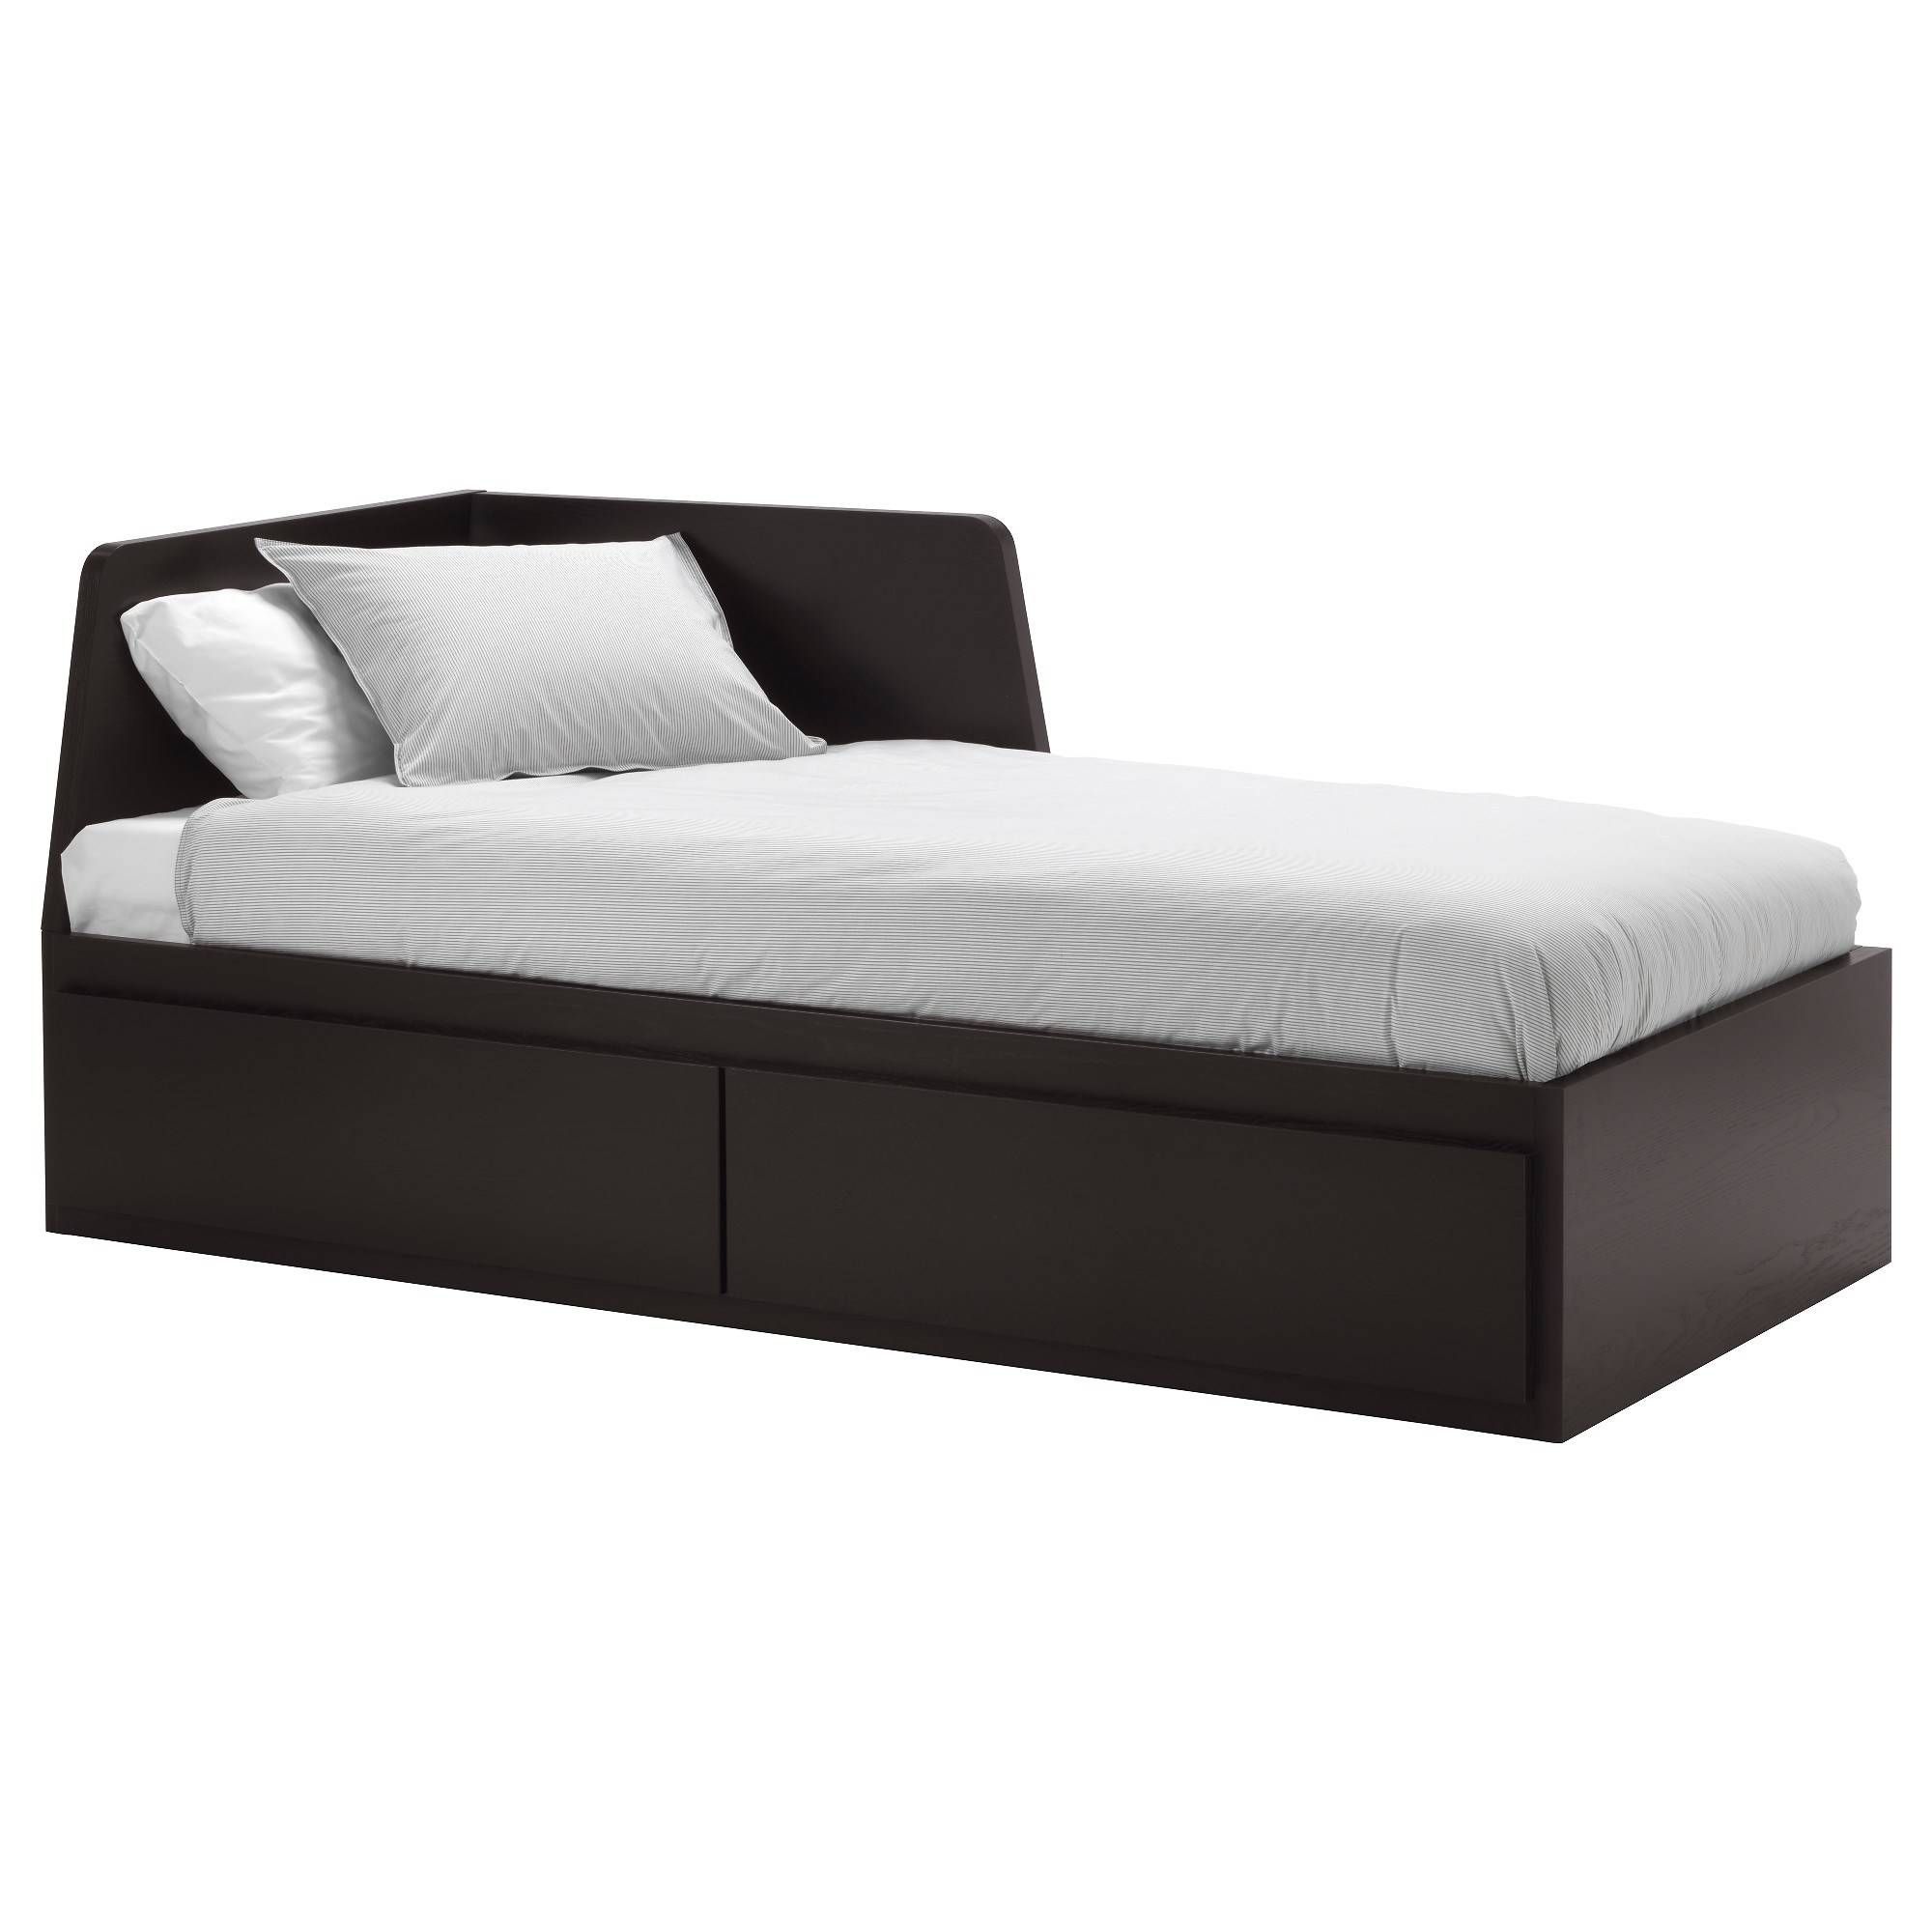 ▻ Sofa Bed : Delightful Single Sofa Bed Ikea Ikea Single Cool With Regard To Ikea Single Sofa Beds (Photo 26 of 30)